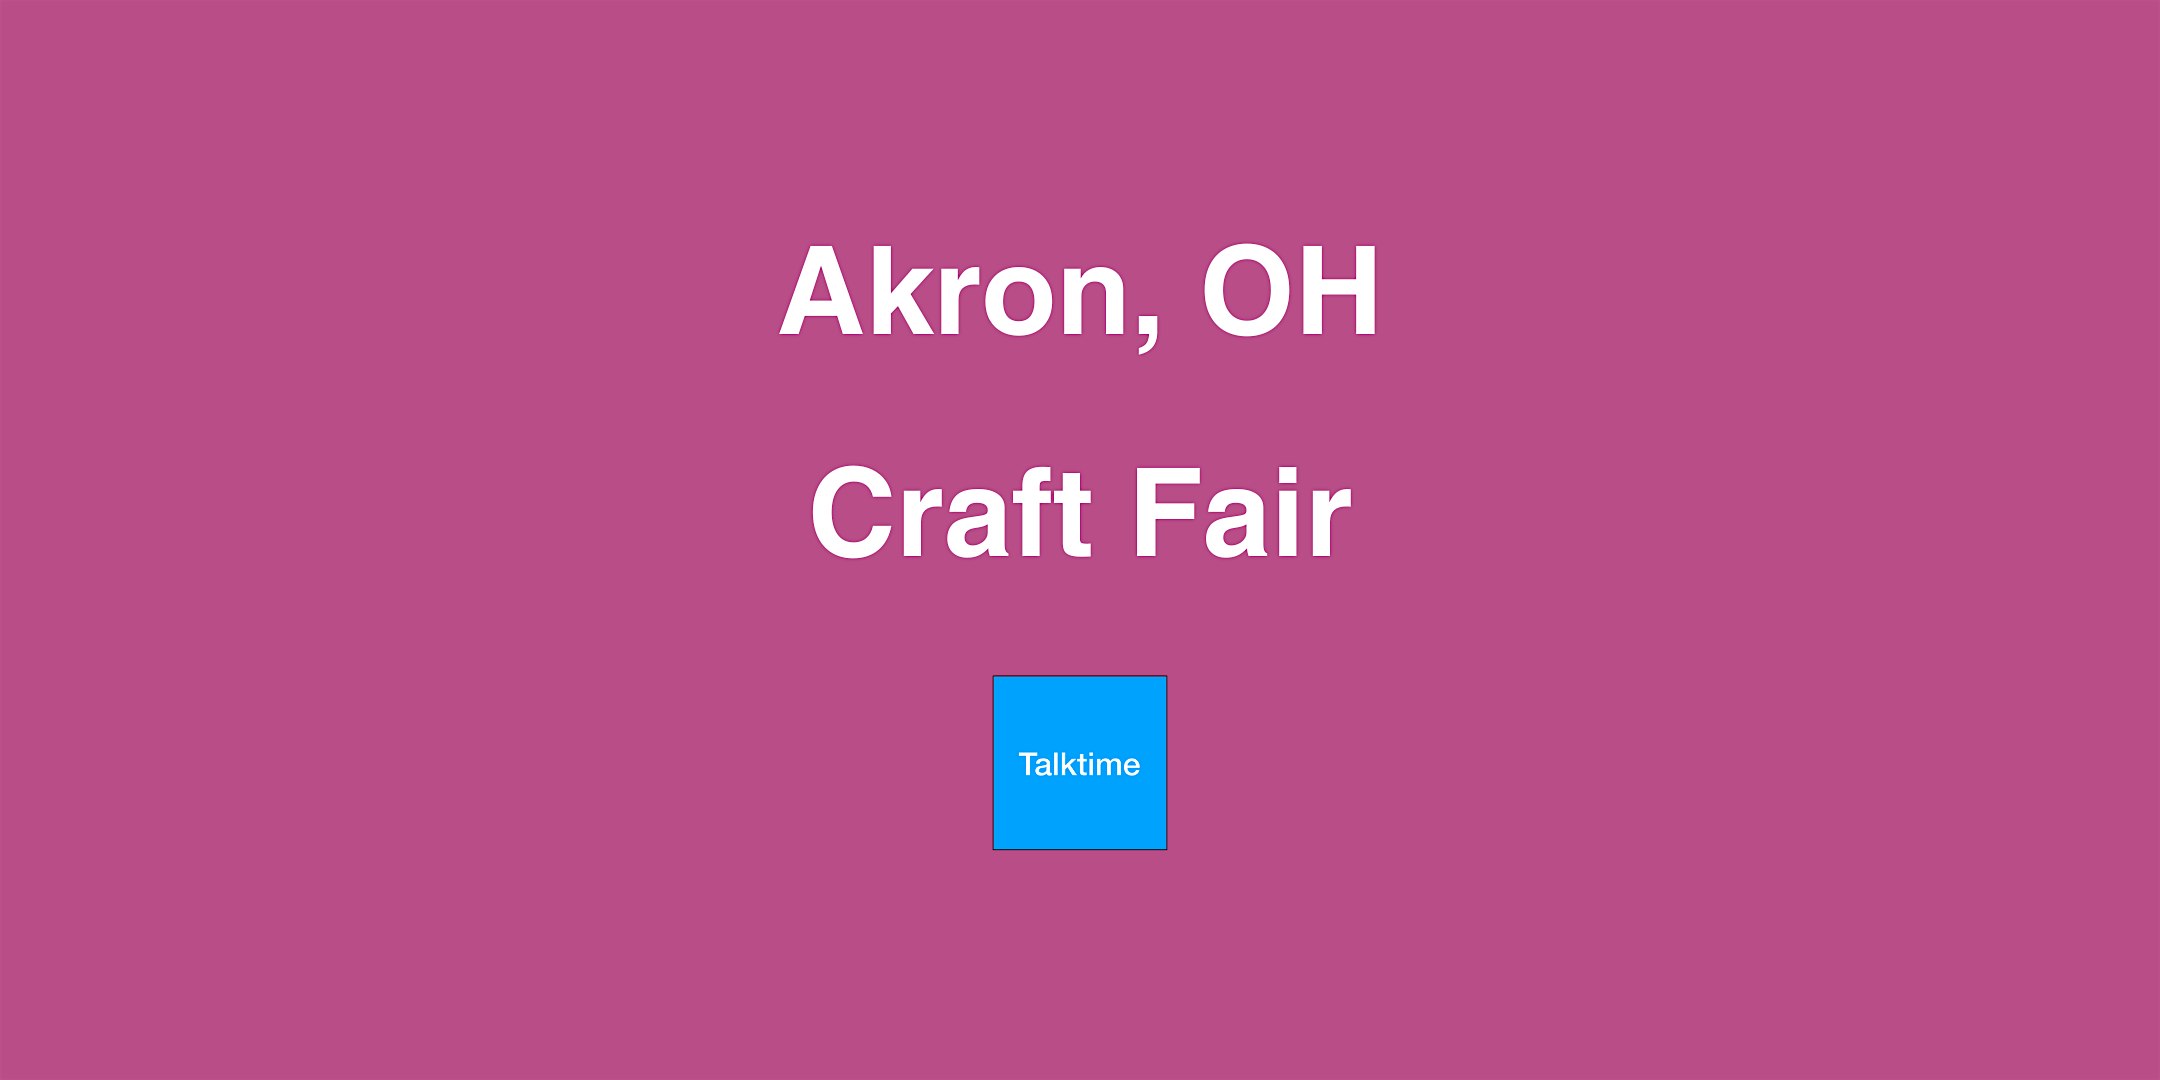 Craft Fair - Akron